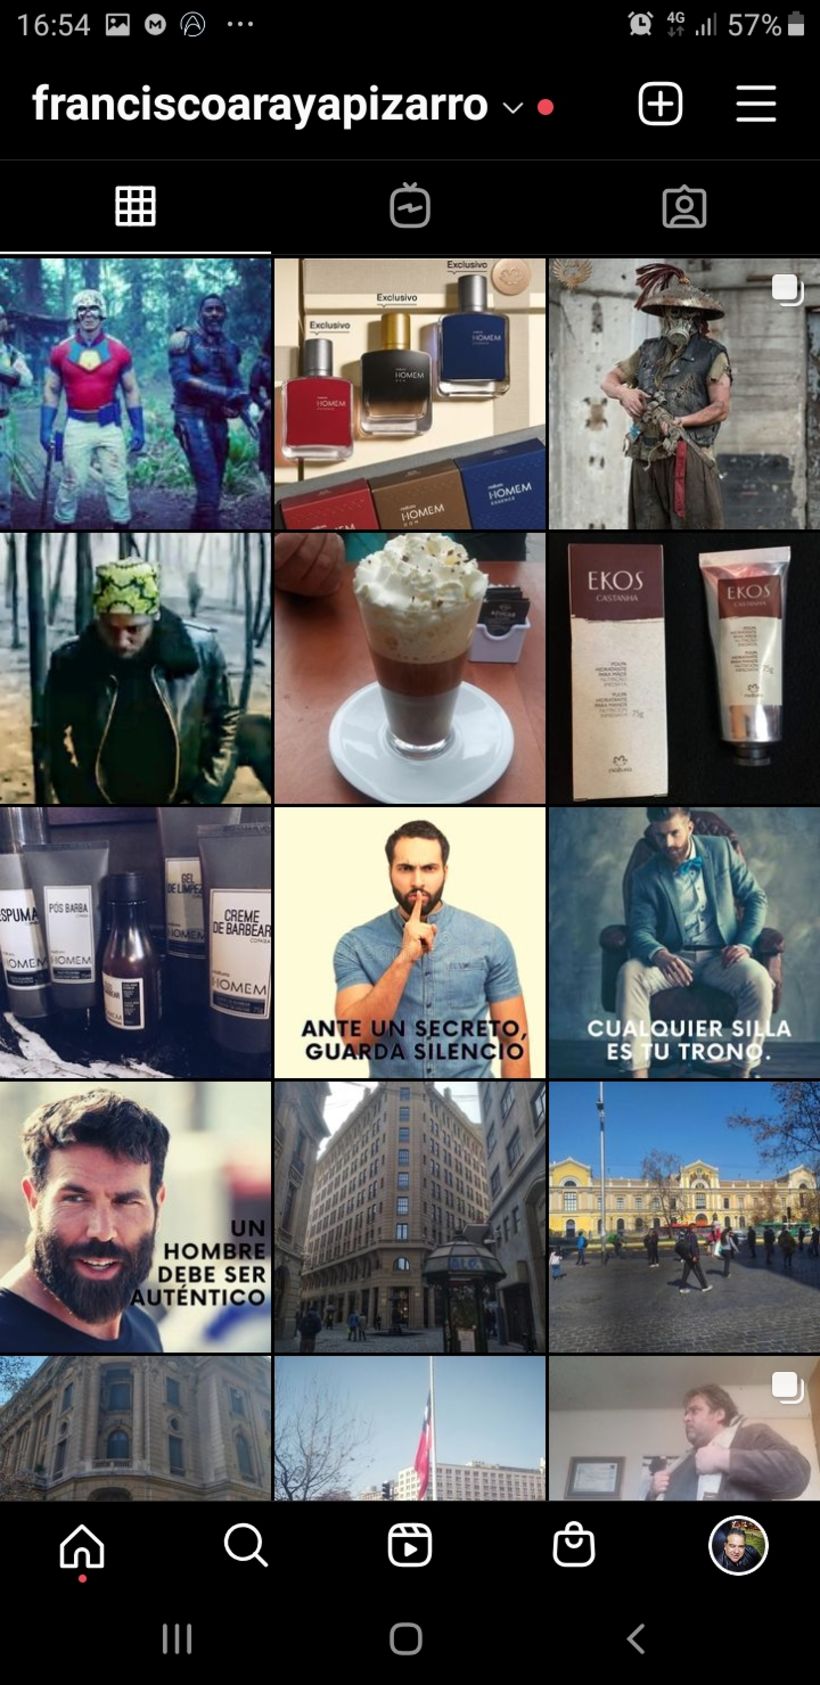 Mi Proyecto del curso: Estrategia de marca en Instagram (franciscoarayapizarro) 5